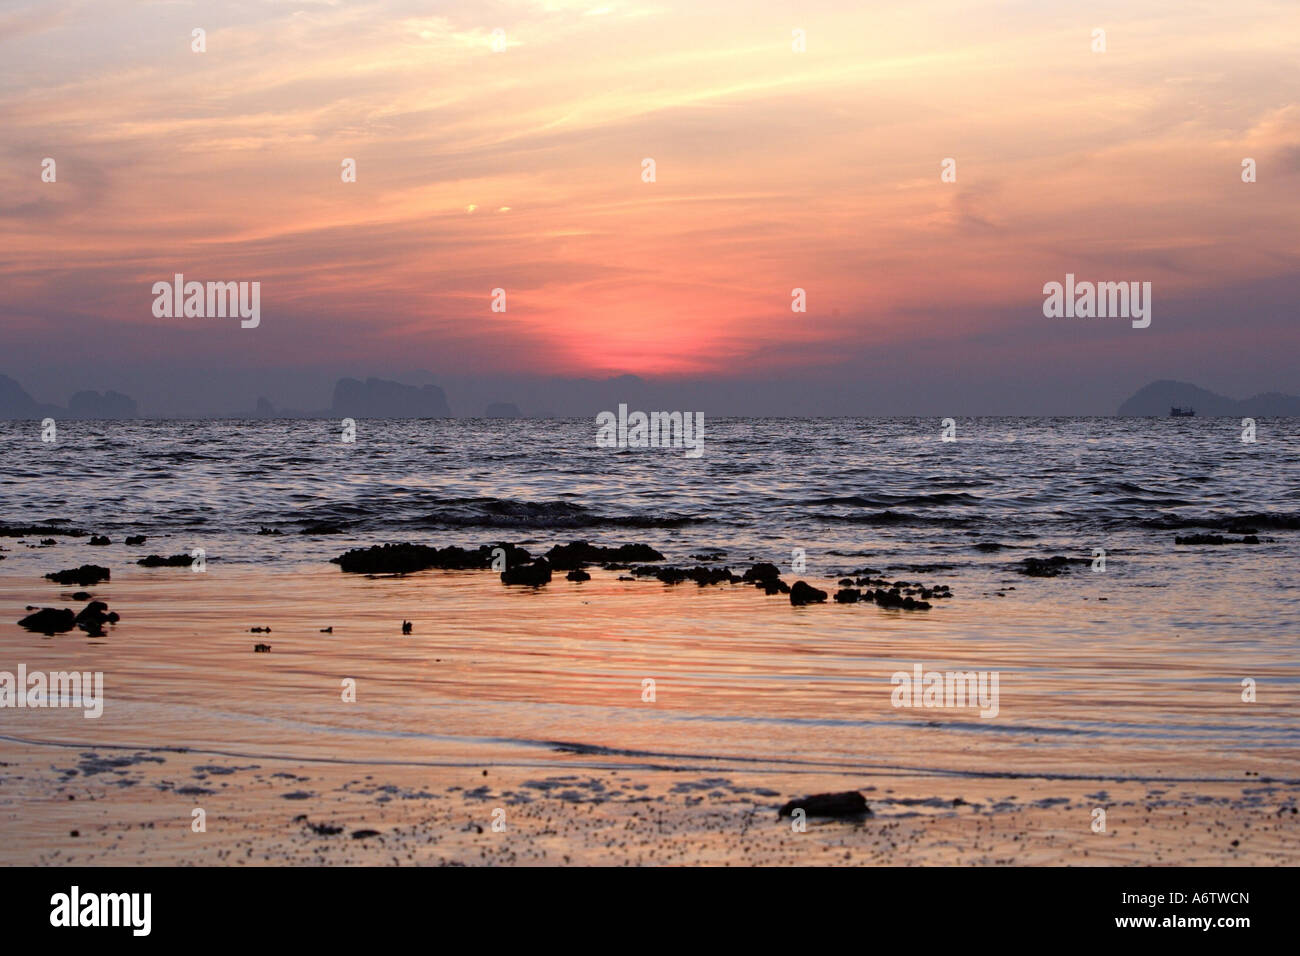 Sunrise at the coast of the island Koh Kradan - Andaman Sea, Thailand, Asia Stock Photo